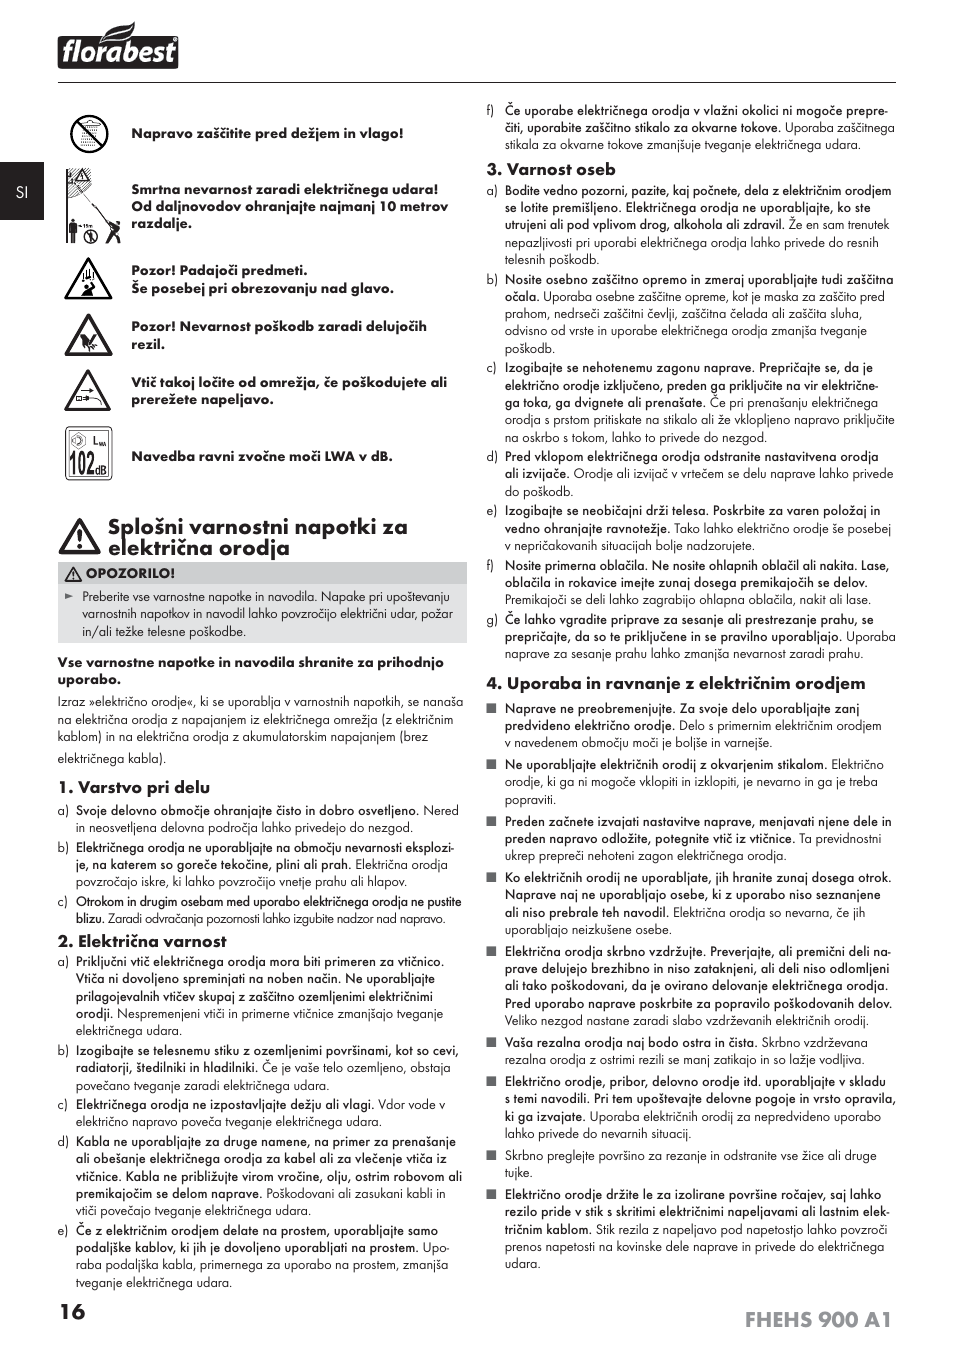 Splošni varnostni napotki za električna orodja | Florabest FHEHS 900 A1  User Manual | Page 20 / 65 | Original mode